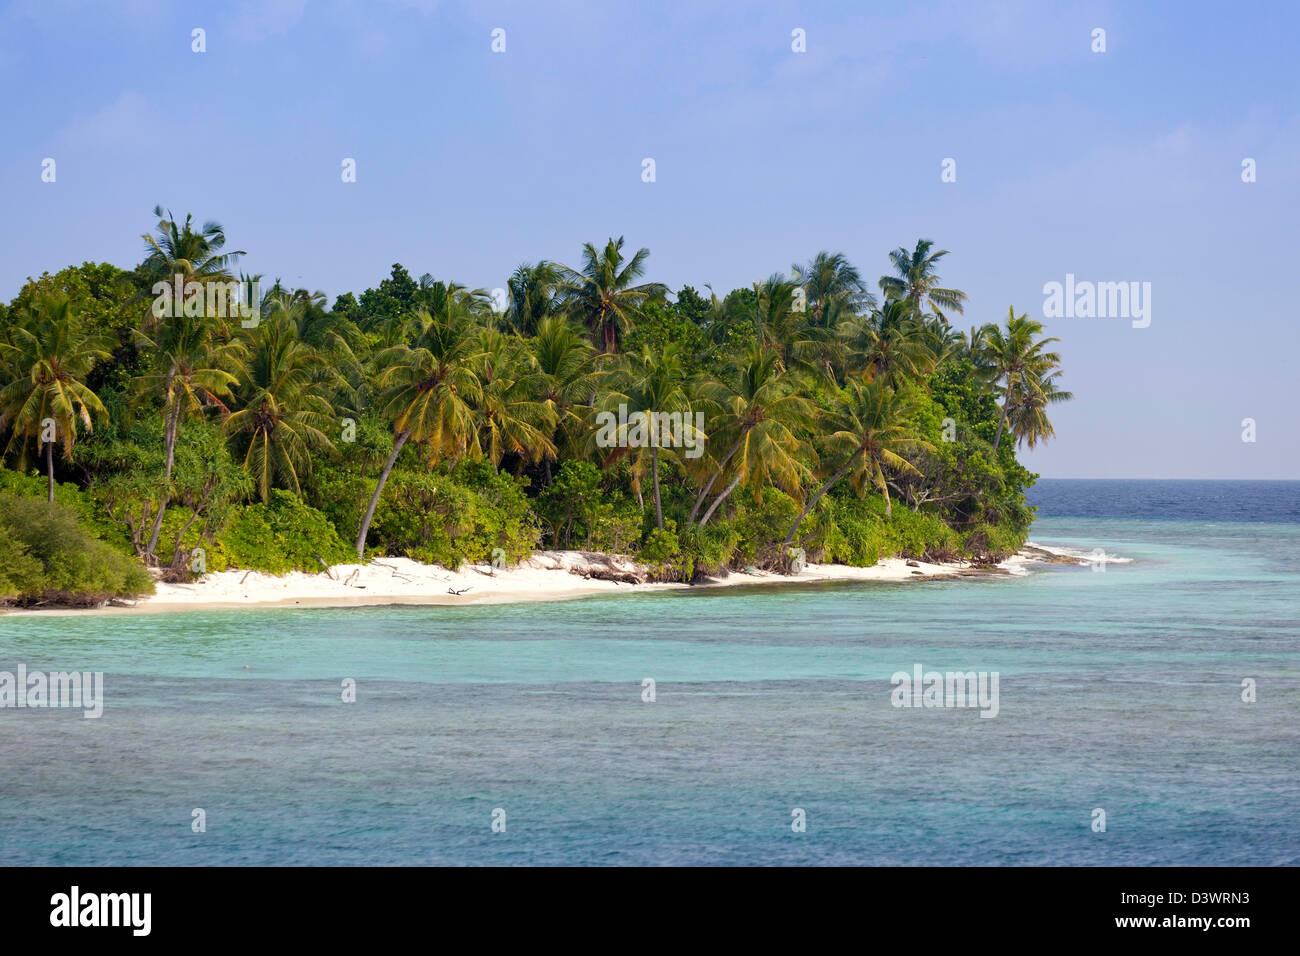 Île déserte, Ari Atoll, Maldives Banque D'Images